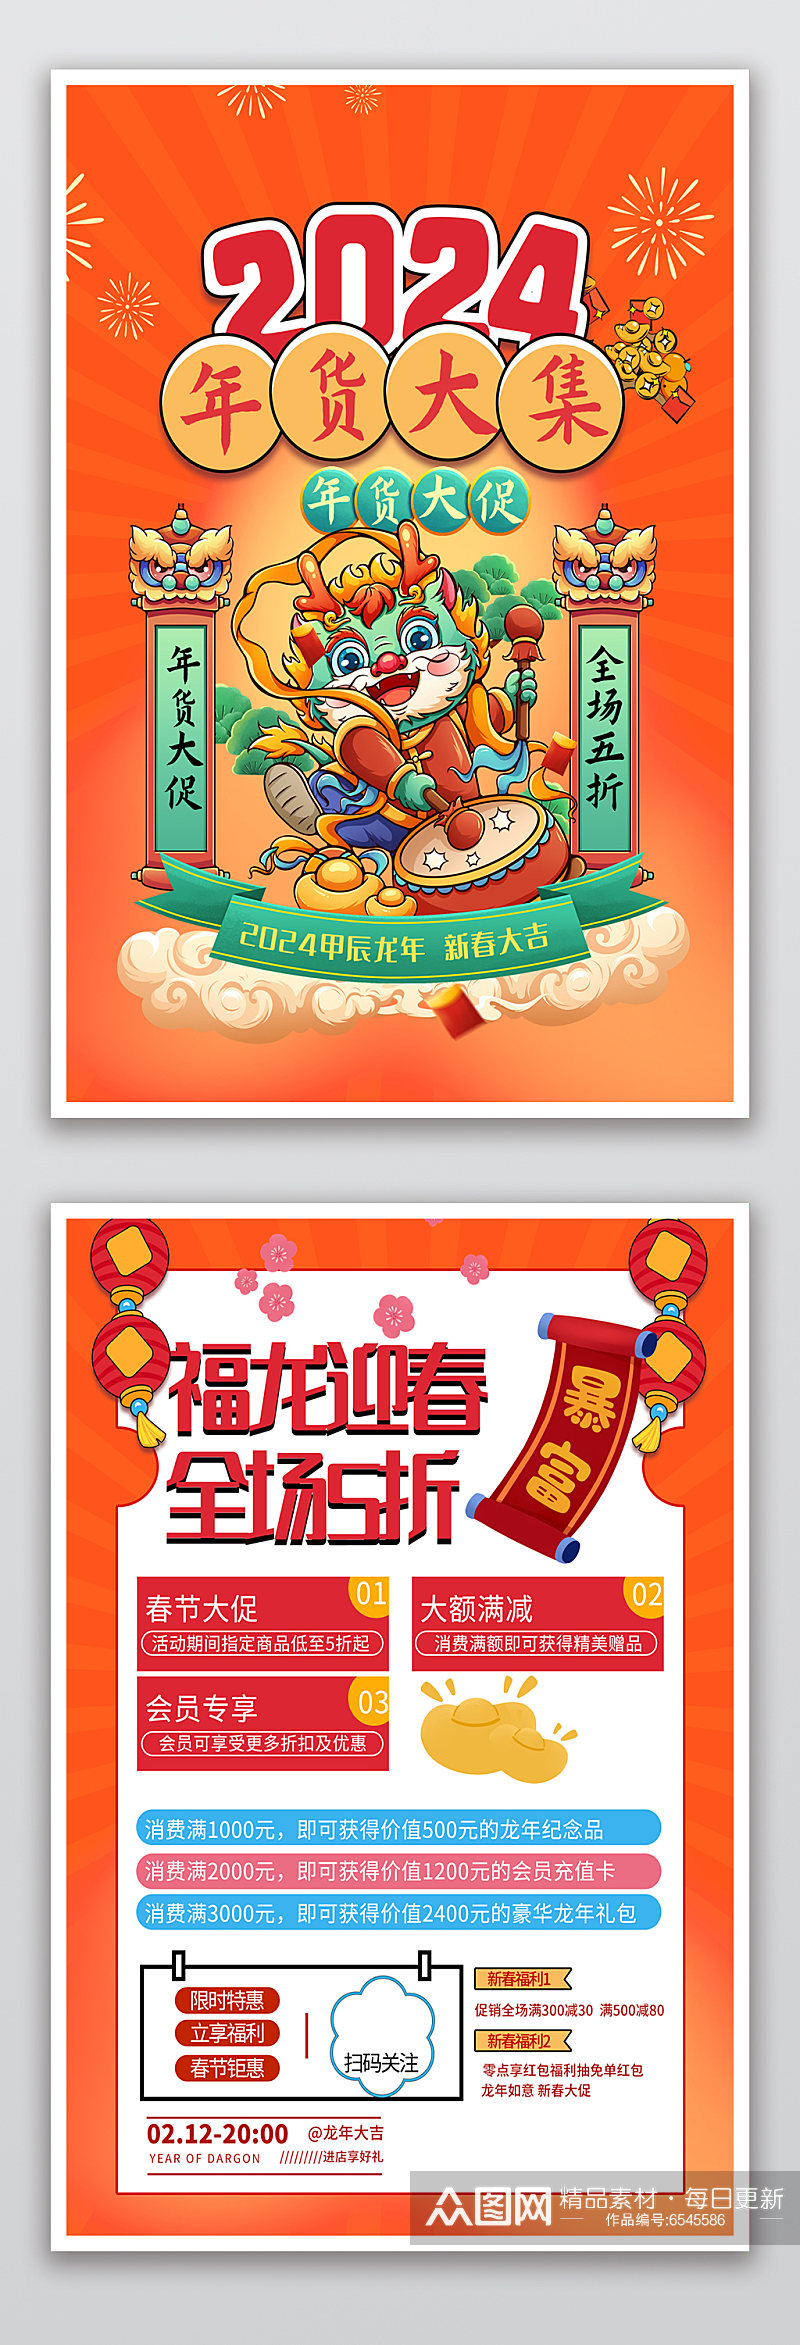 龙年福利春节新年促销宣传单素材